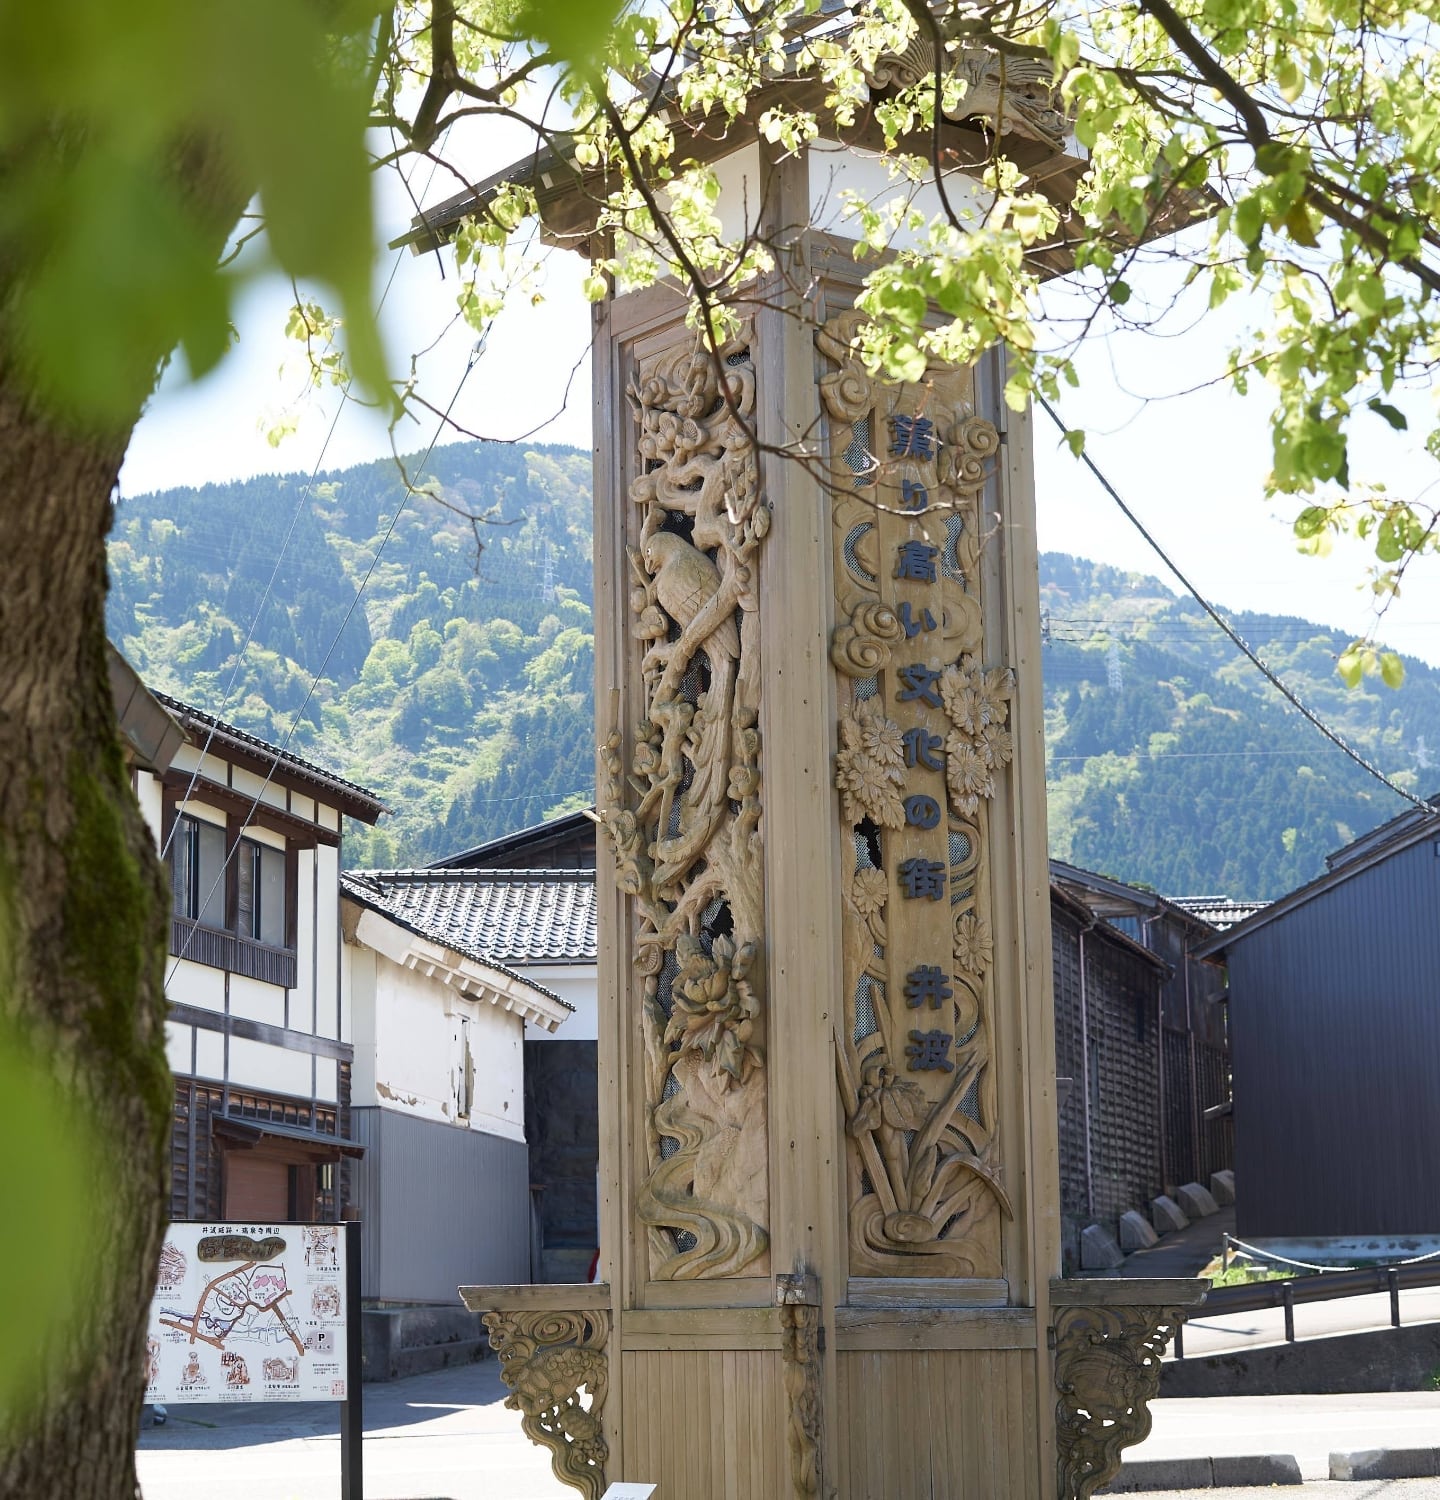 migakiba inamiのイメージ画像。井波エリアを象徴する「薫り高い文化の街　井波」と書かれた木彫りのモニュメントが写っています。